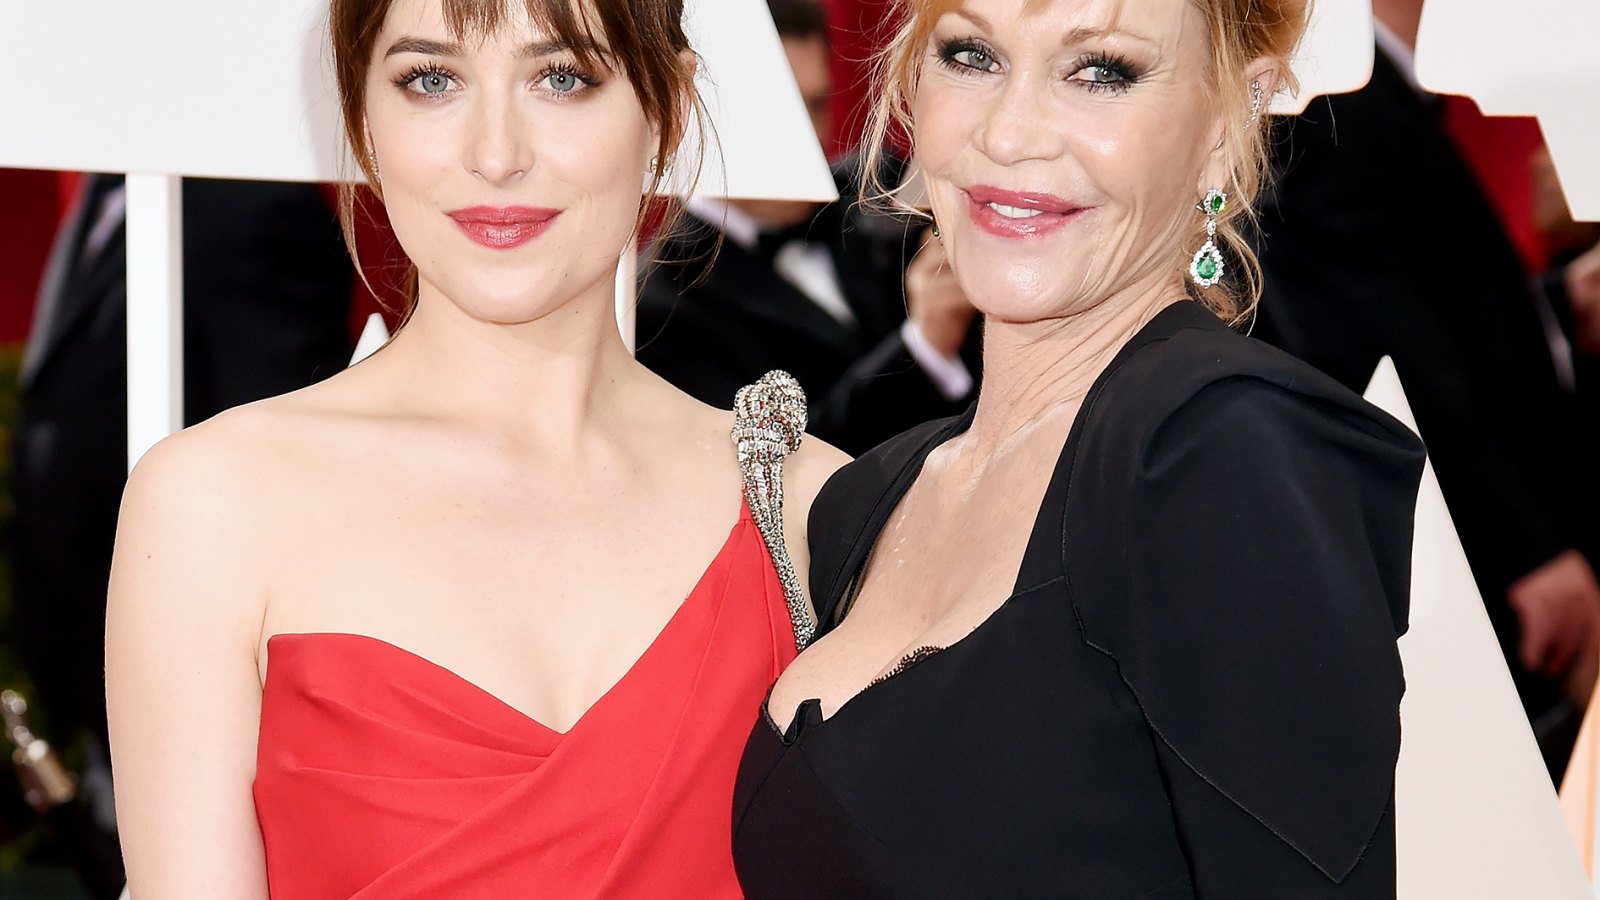 Dakota Johnson and Melanie Griffith at the 2015 Oscars